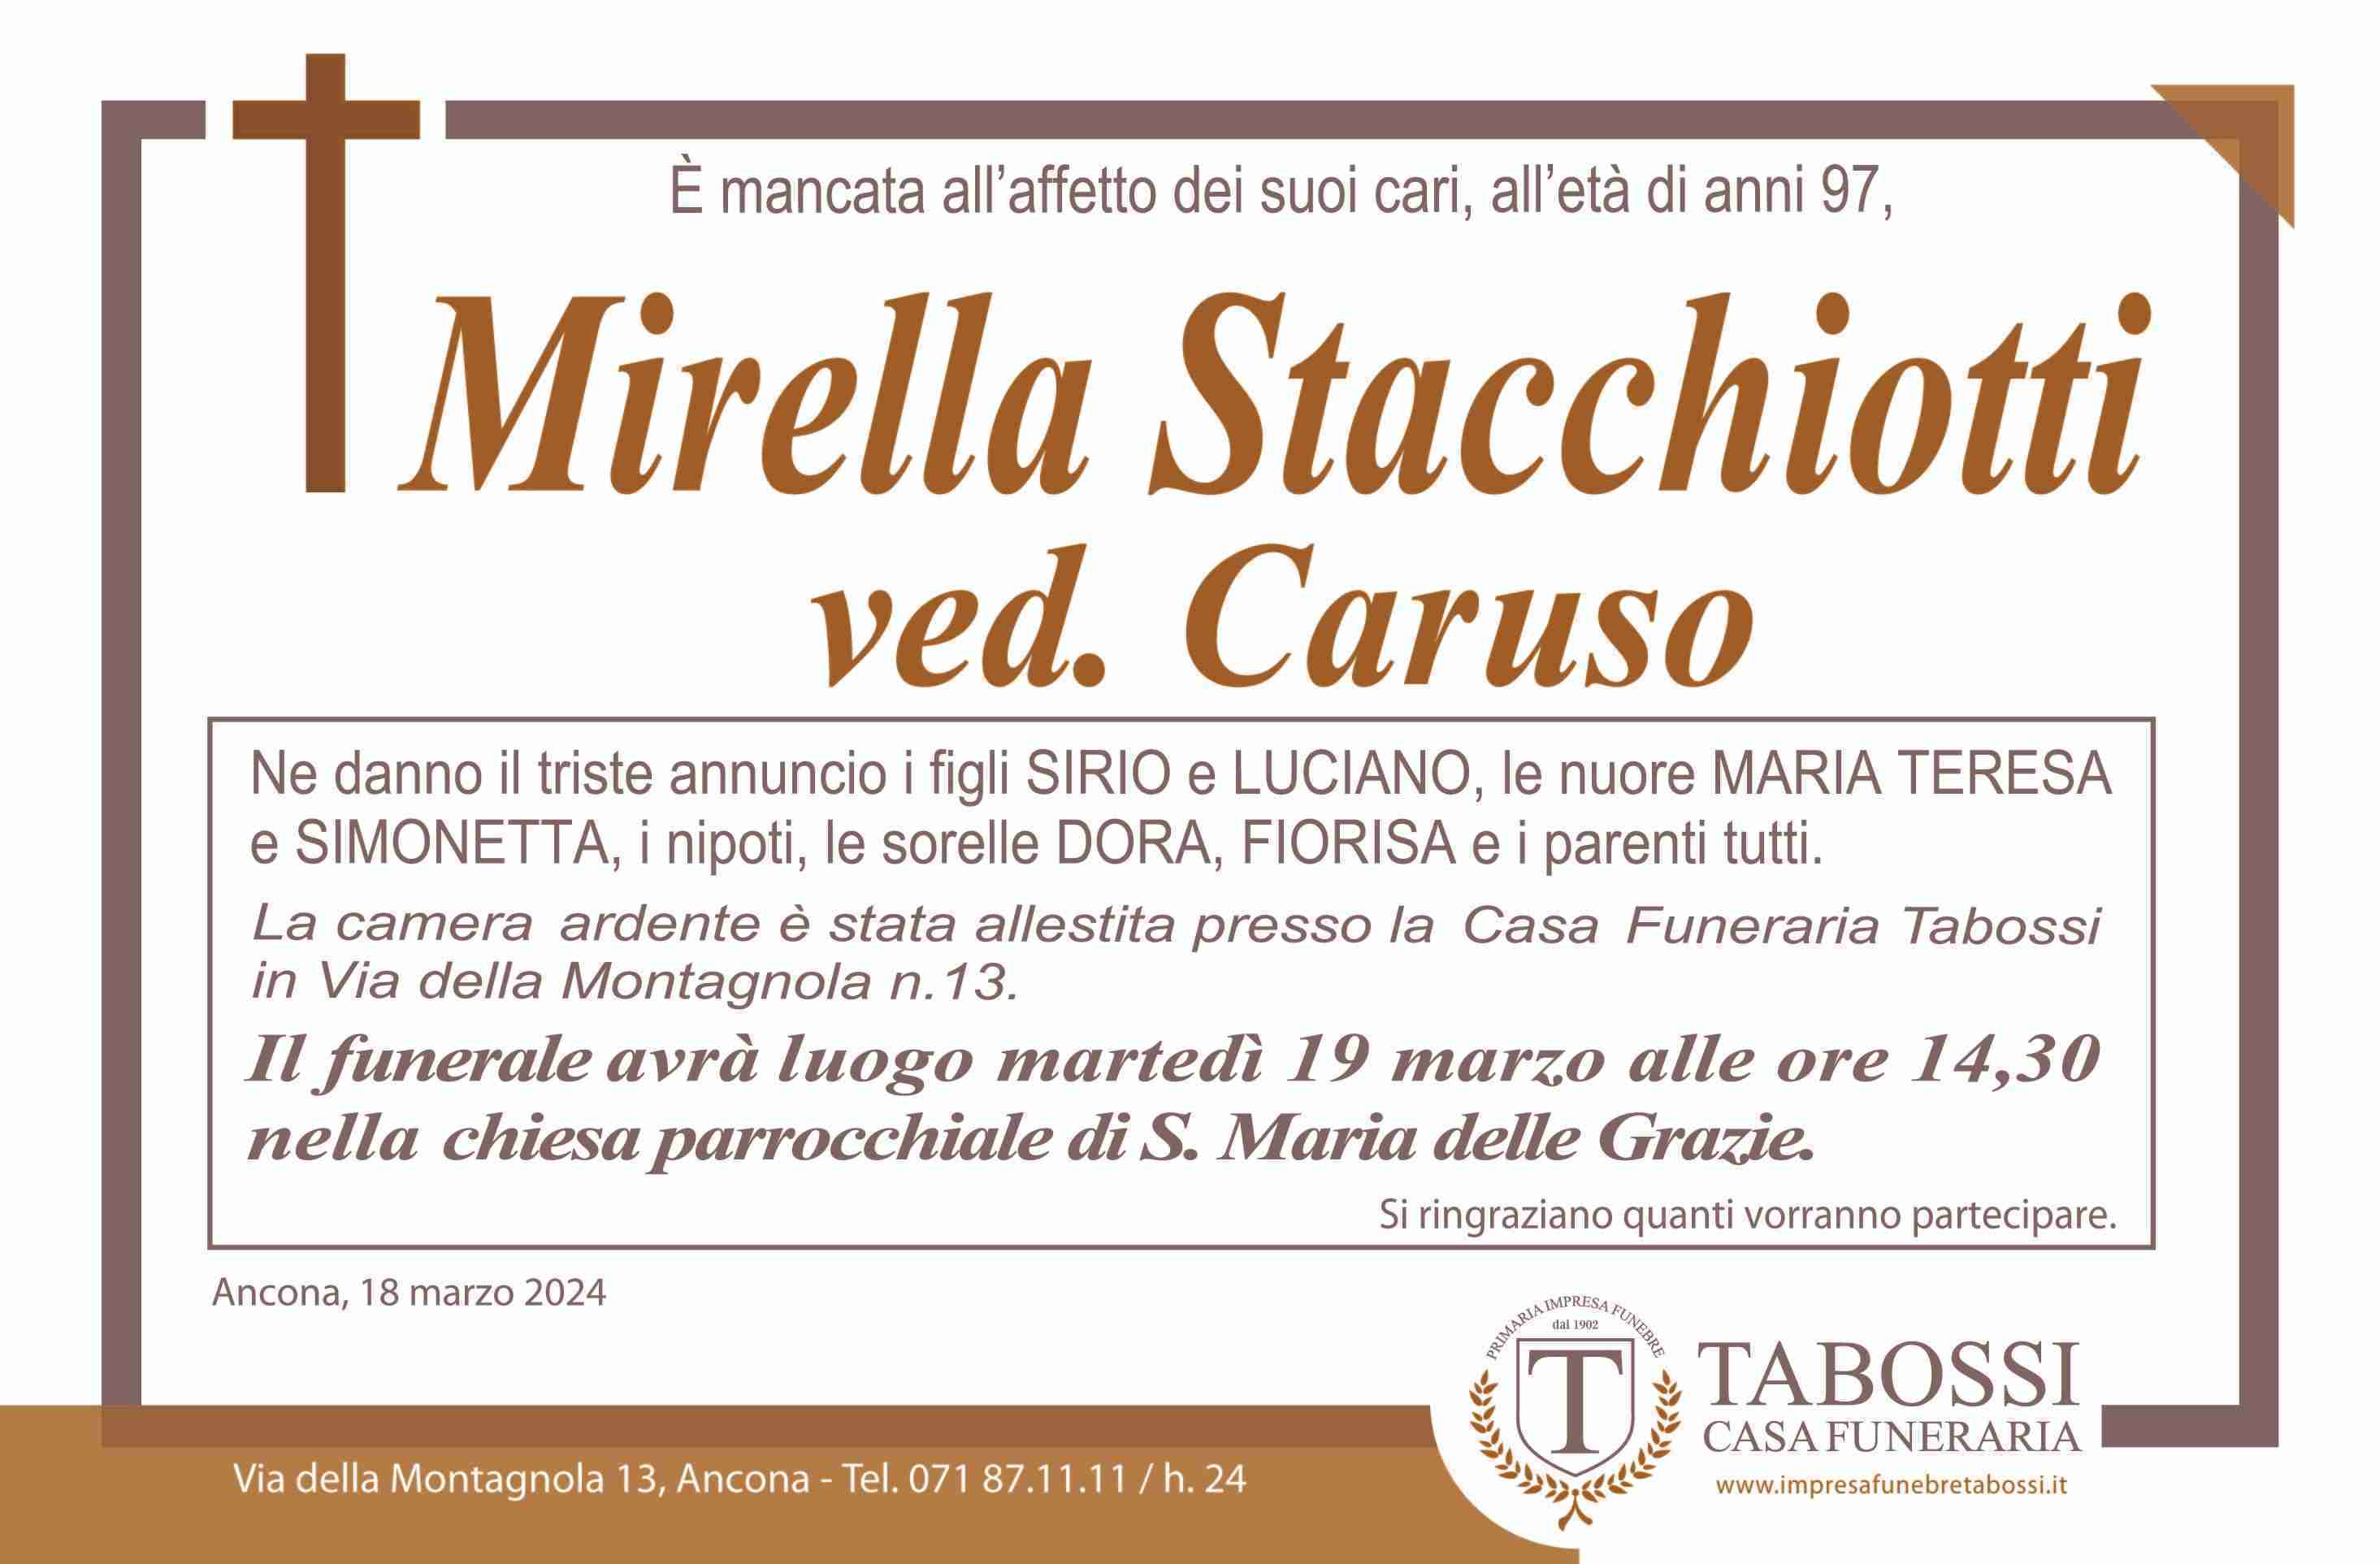 Mirella Stacchiotti